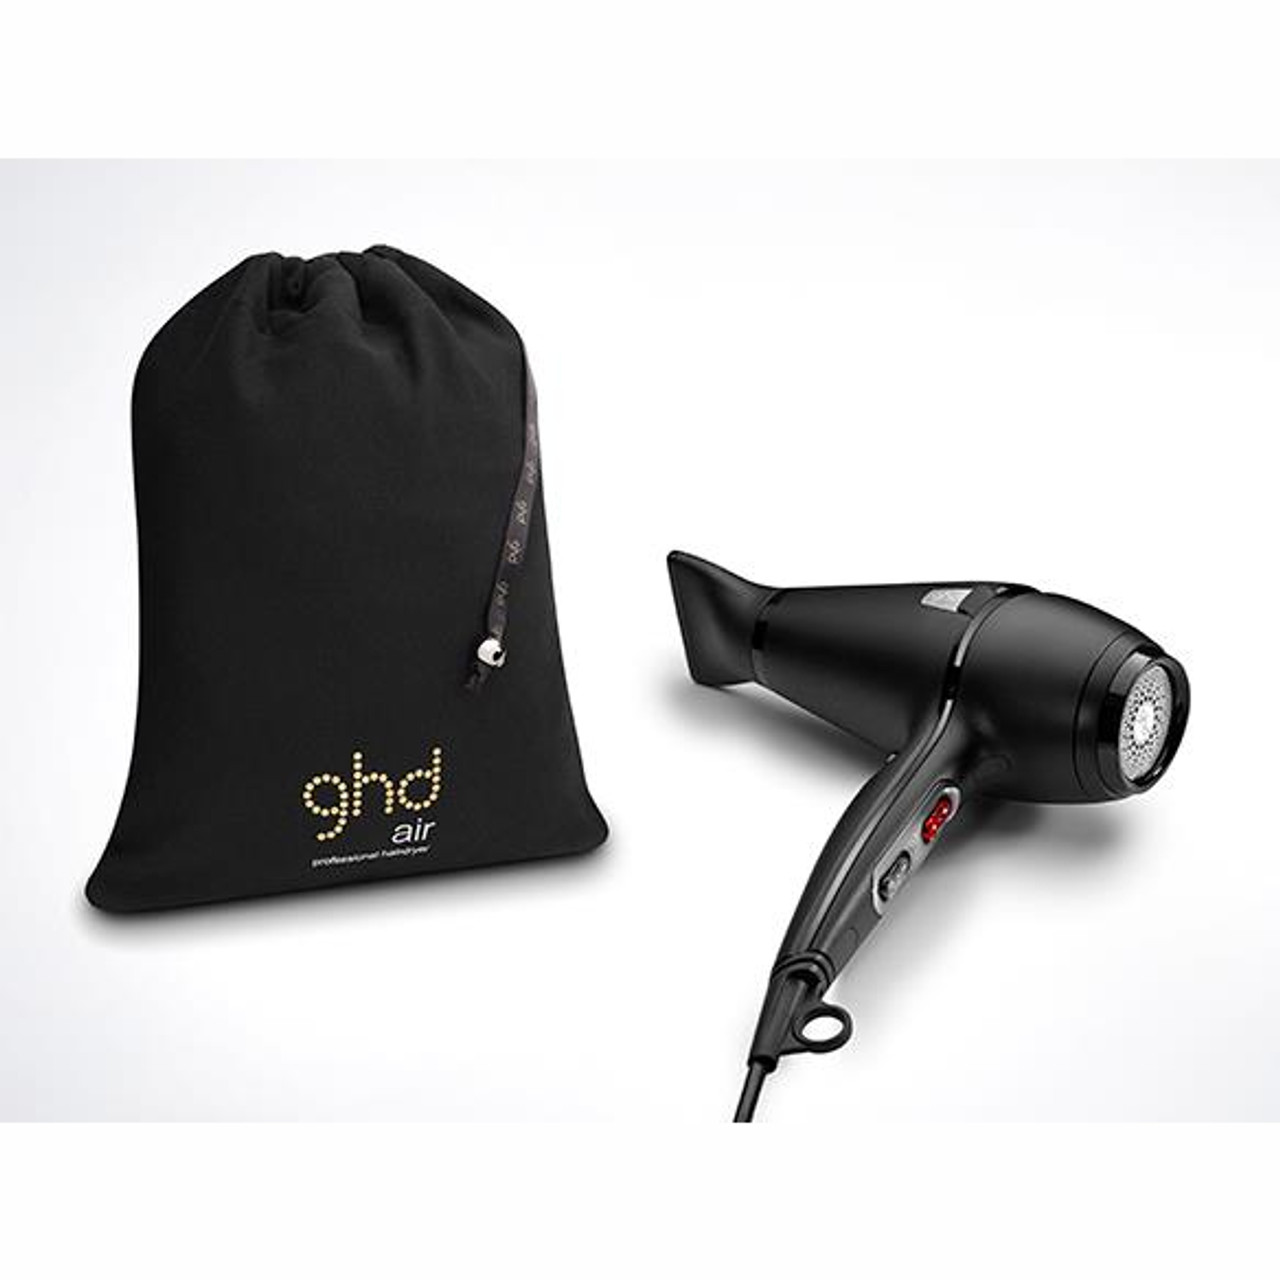 Ghd - sèche cheveux air + pochette hairprice - Conforama